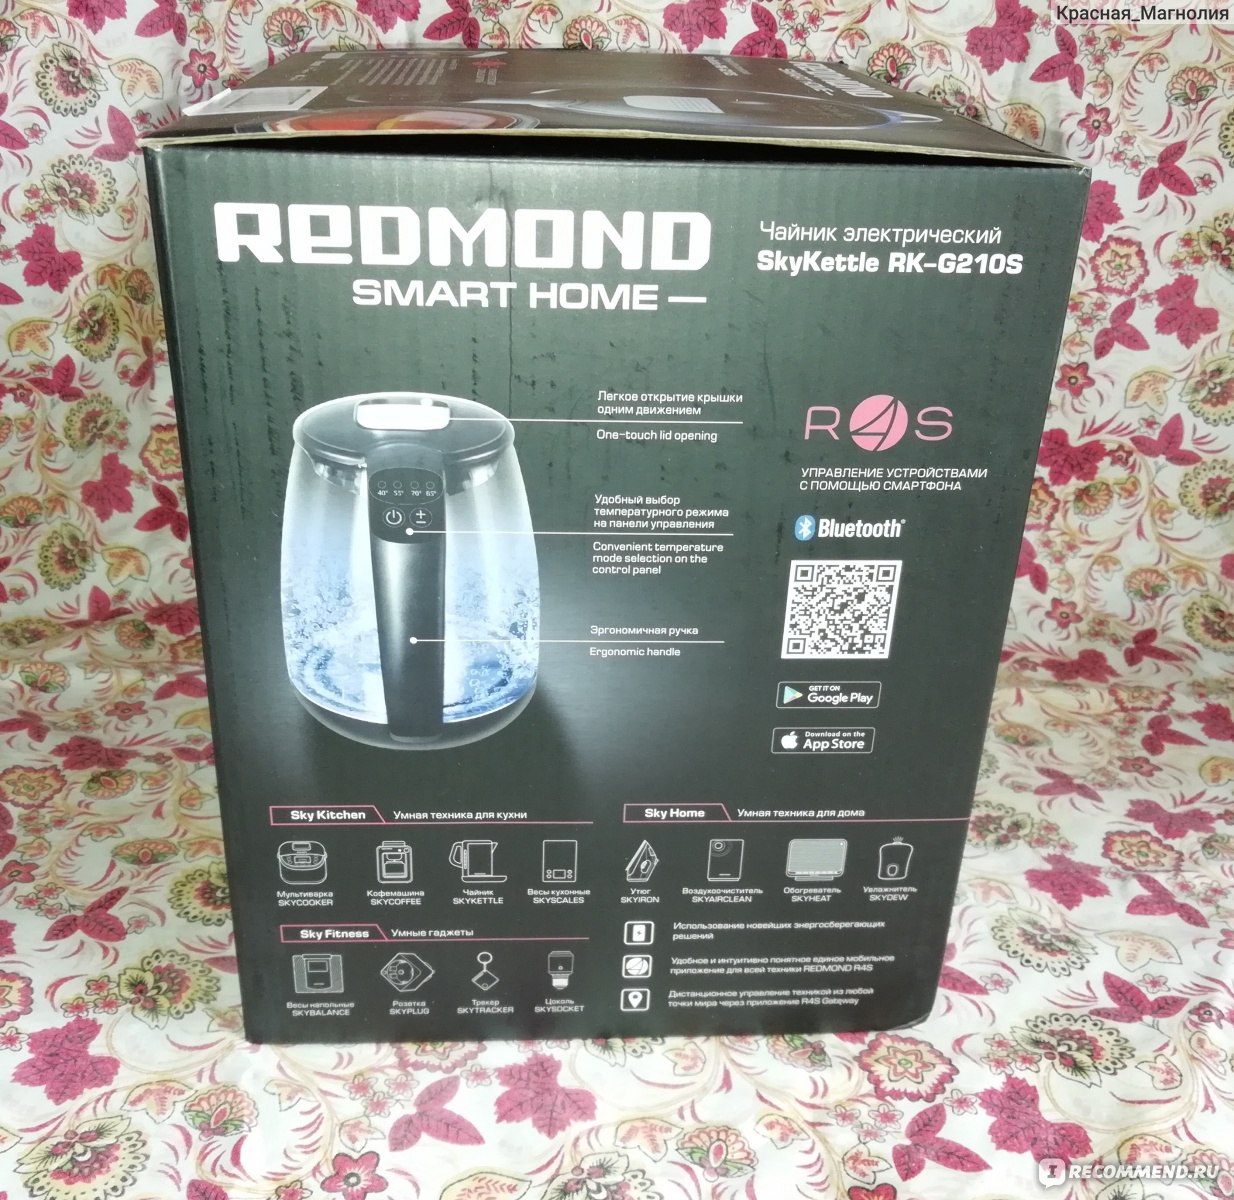 Подключение устройств redmond — база знаний